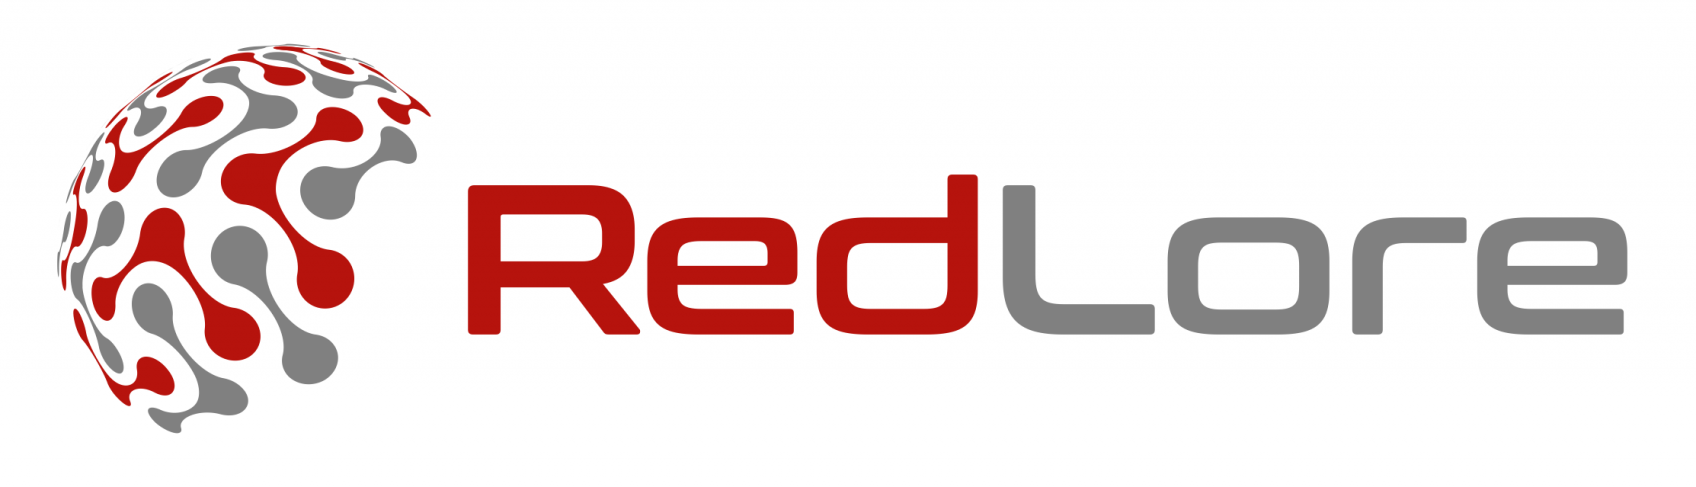 redlore Logo